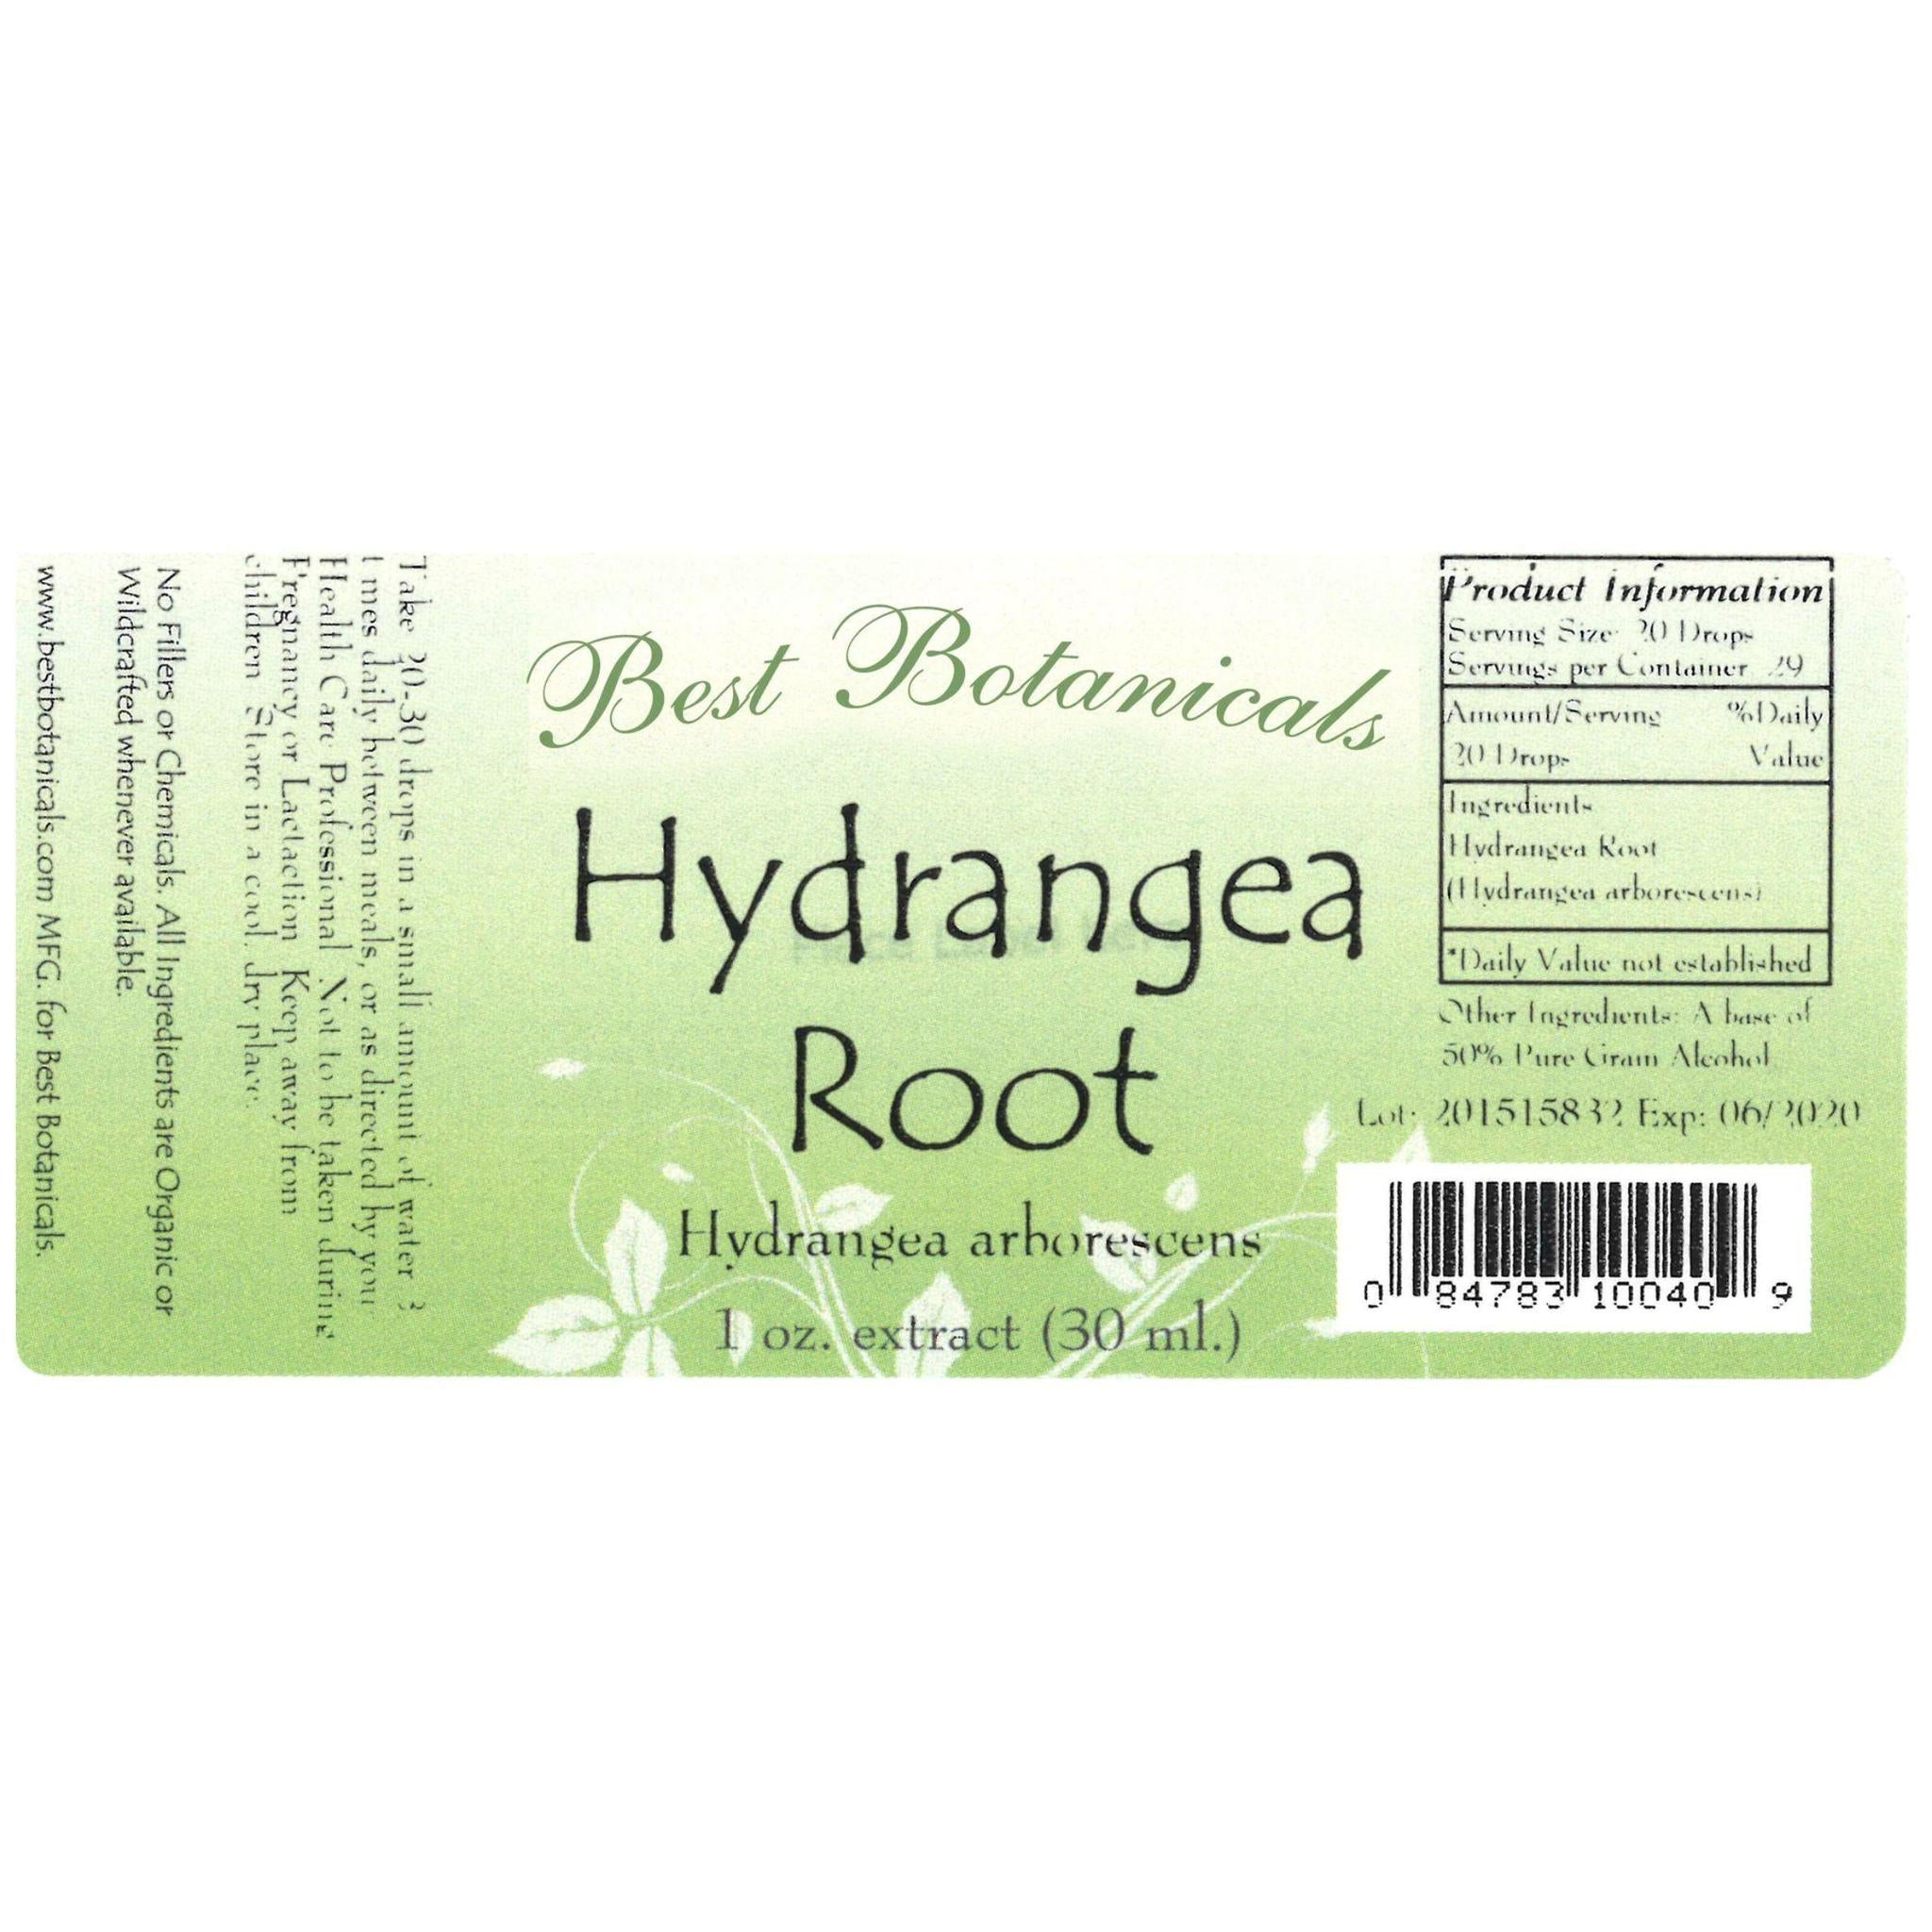 Hydrangea Root Extract - 1 oz